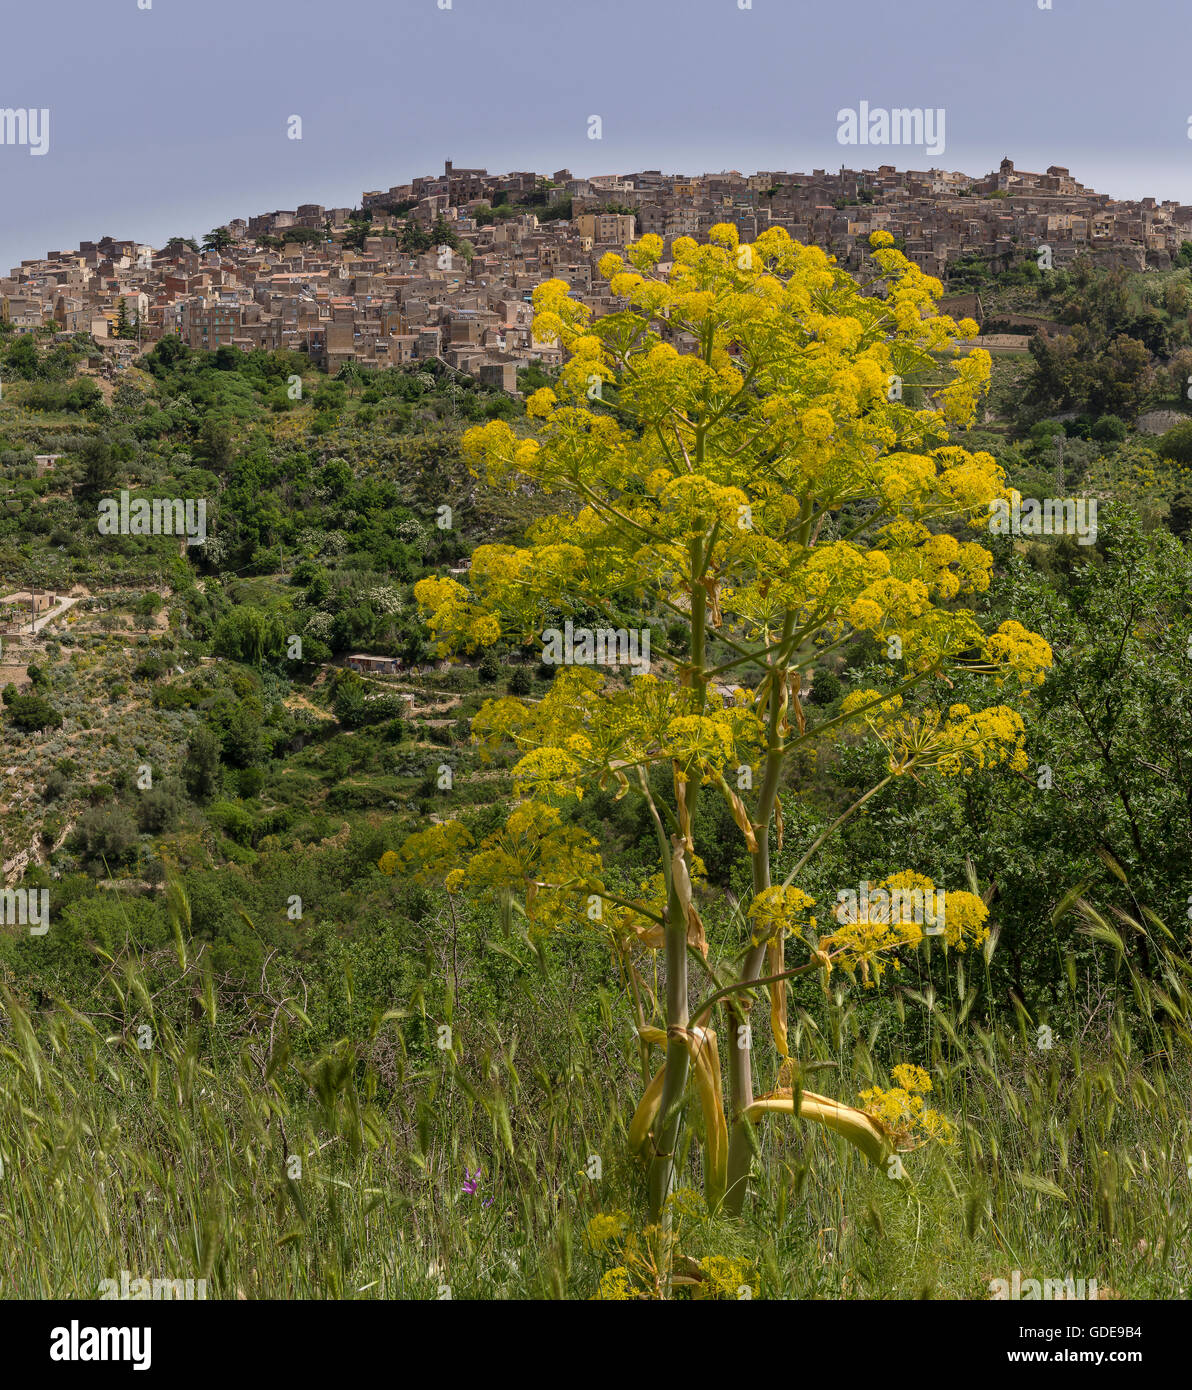 Umbellifer amarillo grande cerca de una aldea de montaña Foto de stock